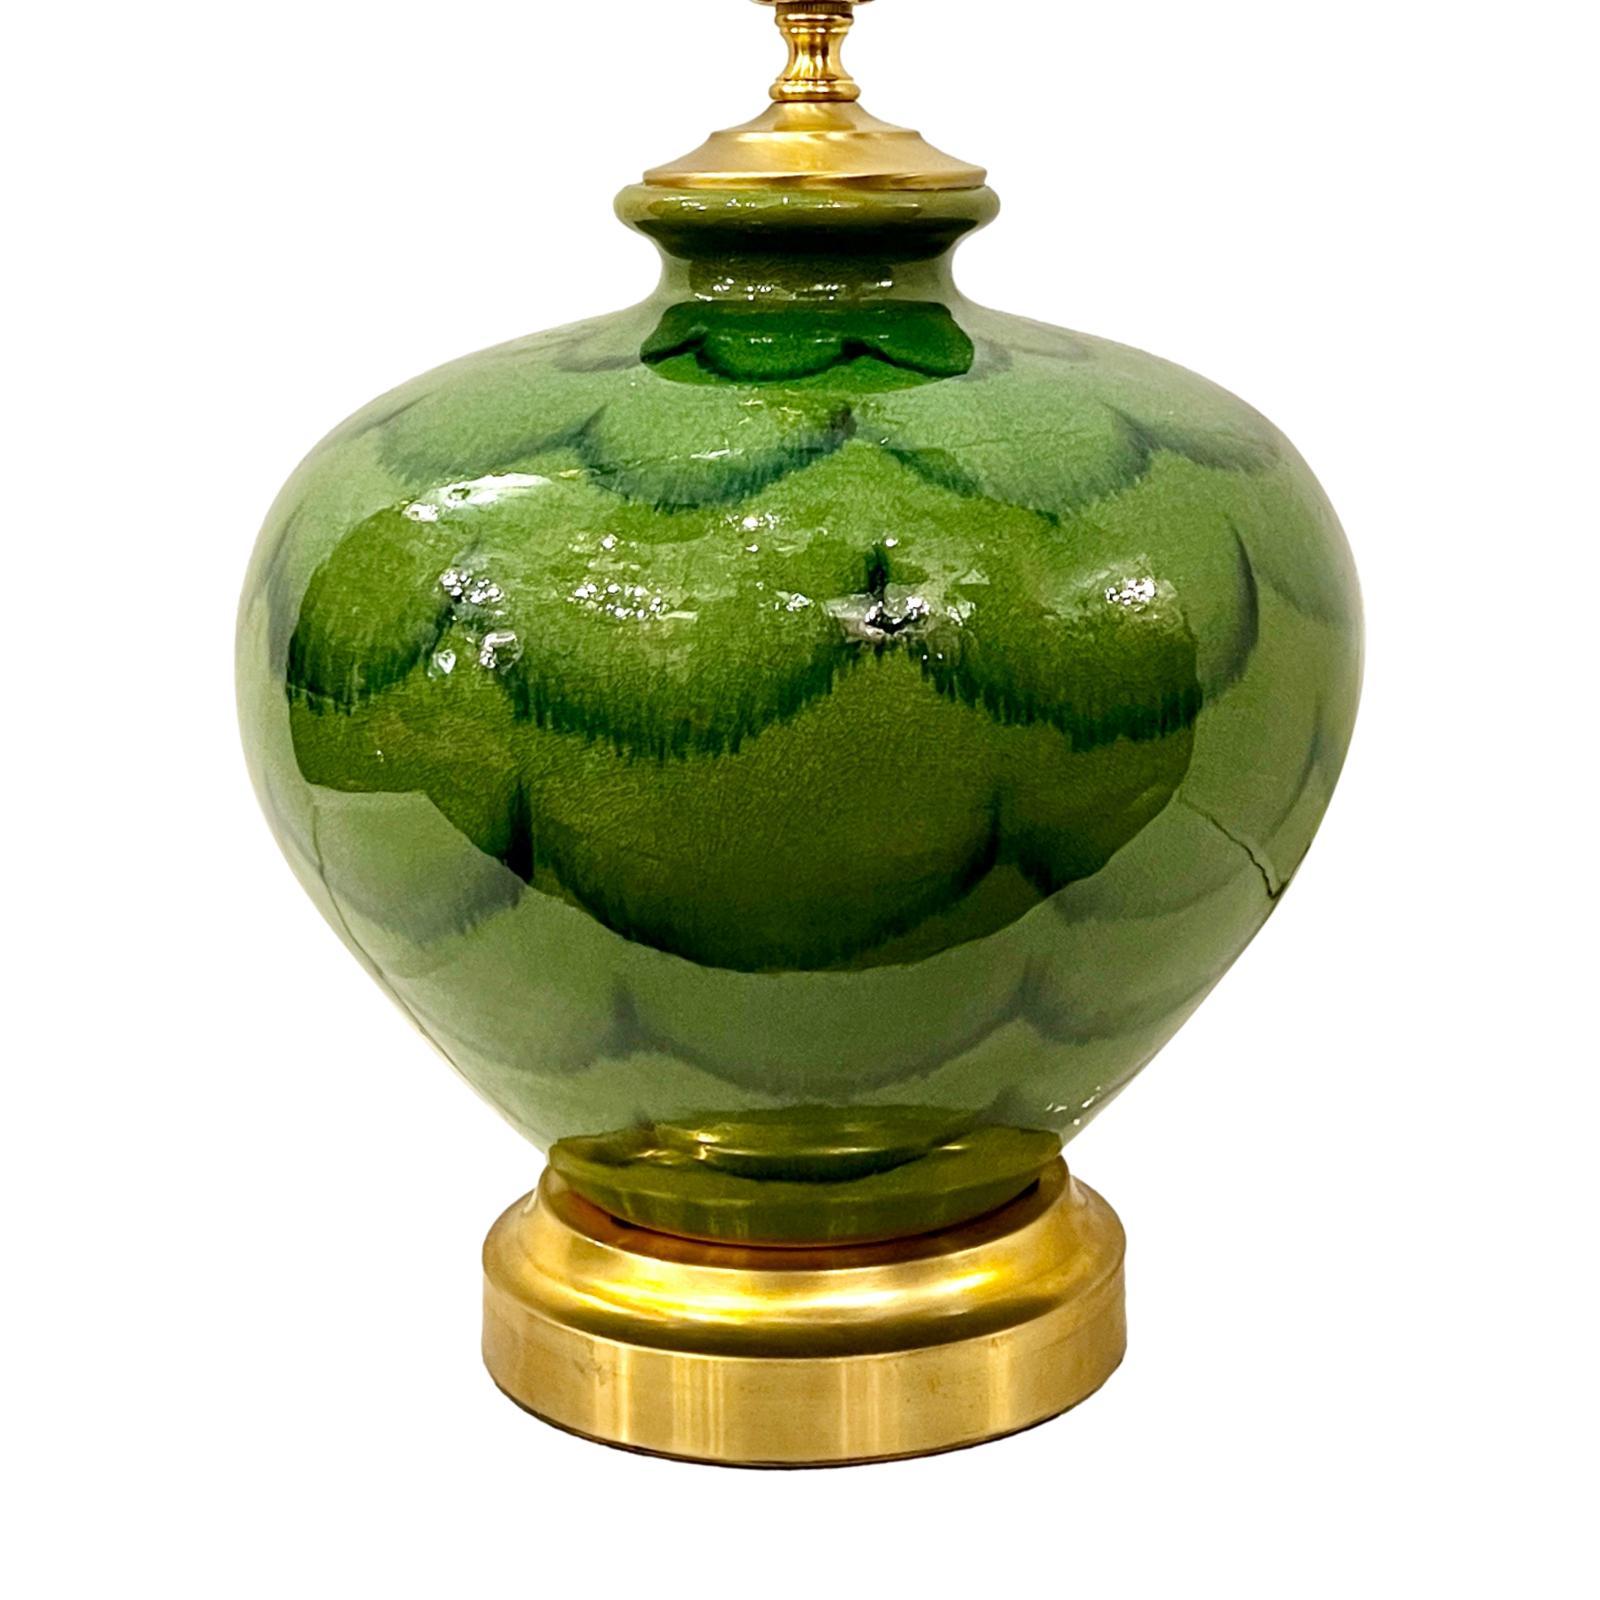 CIRCA 1950 Italienische Tischlampe aus grün glasierter Keramik mit vergoldetem Sockel.

Abmessungen:
Höhe des Körpers: 12